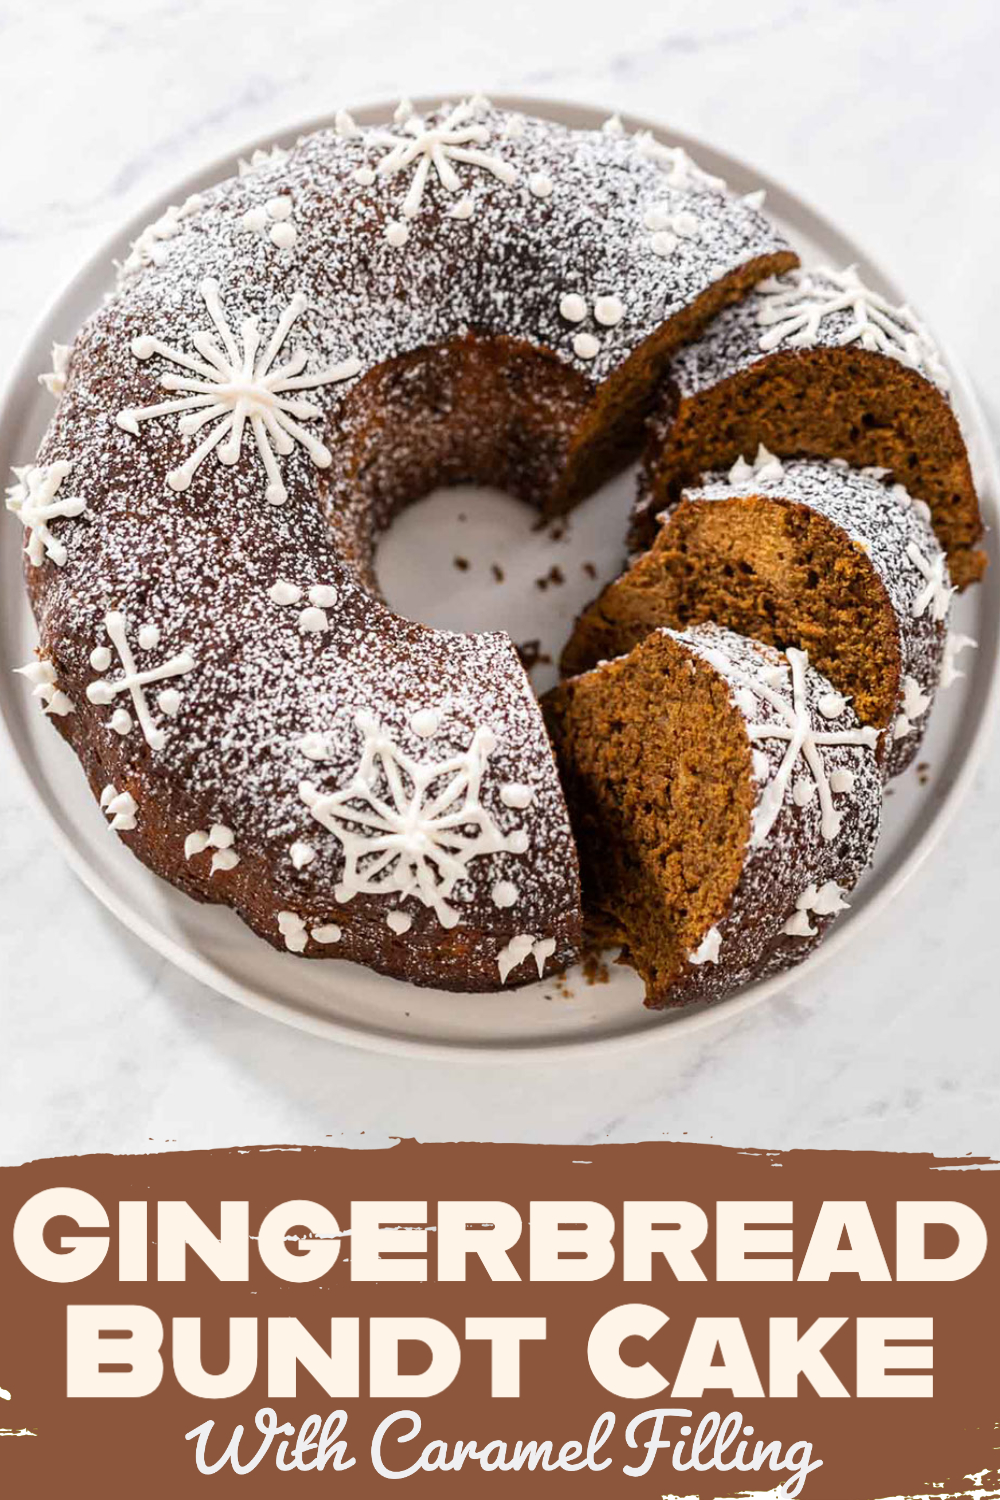 Gingerbread Bundt Cake With Caramel Filling